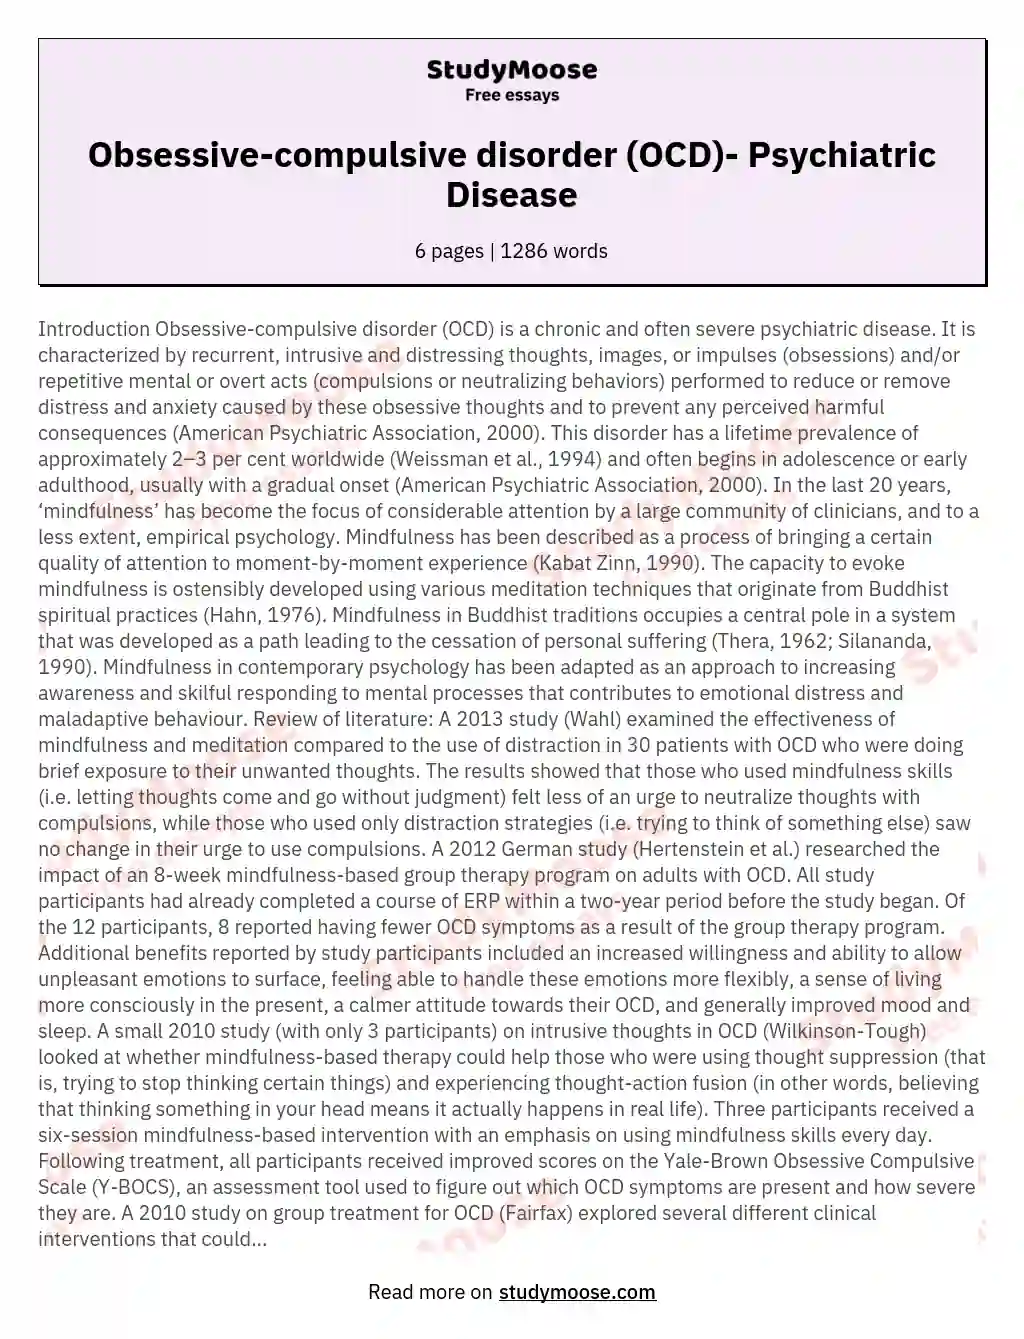 Obsessive-compulsive disorder (OCD)- Psychiatric Disease